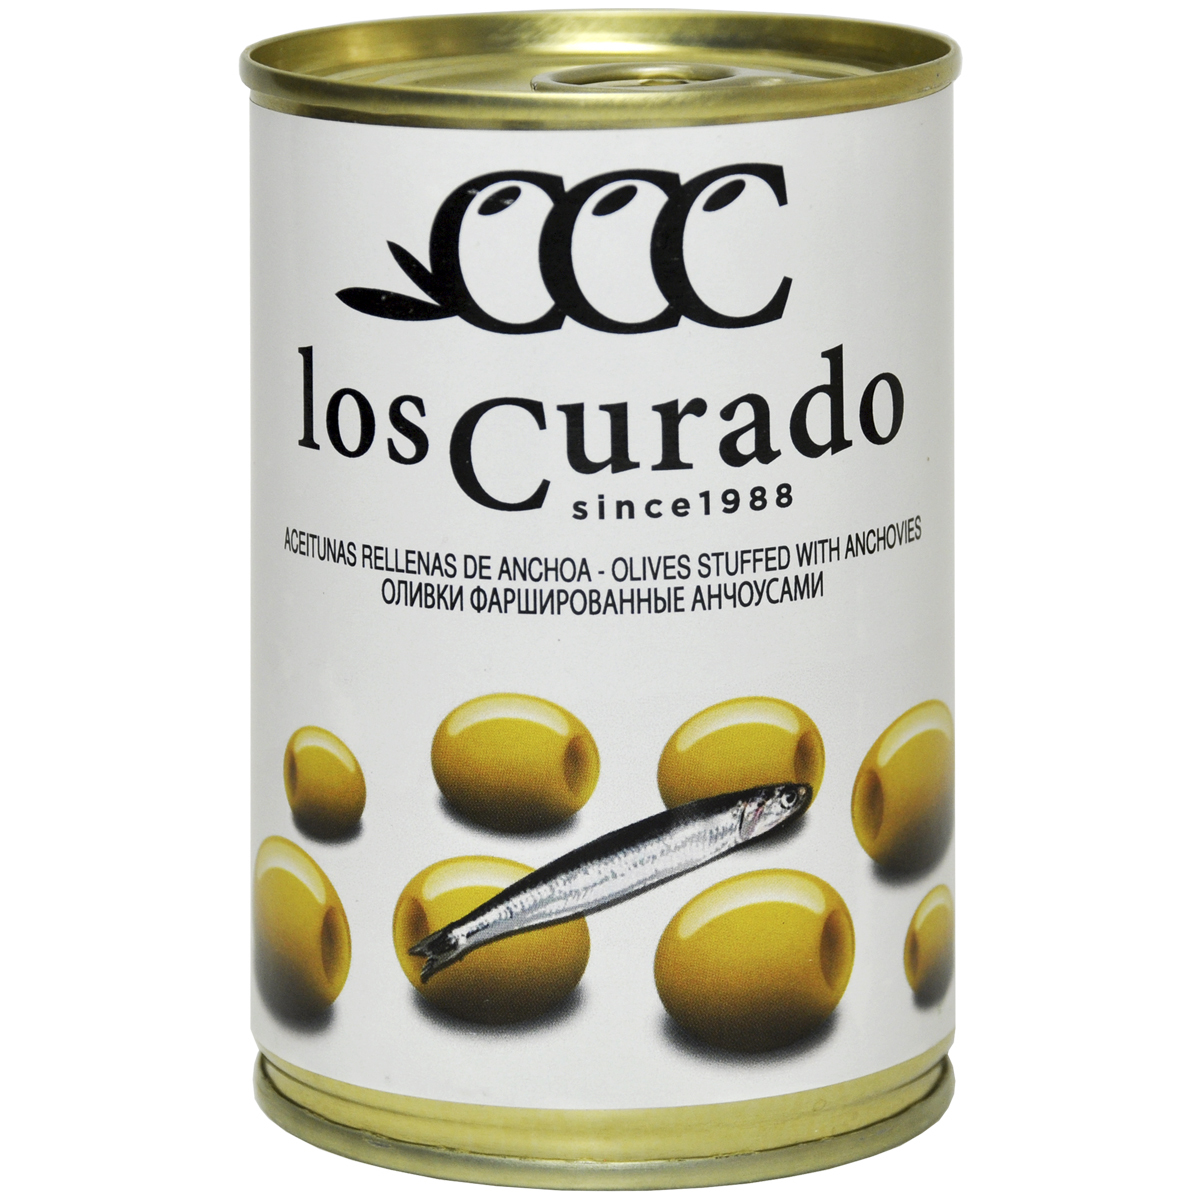 Оливки фаршированные анчоусами Los Curado 300г